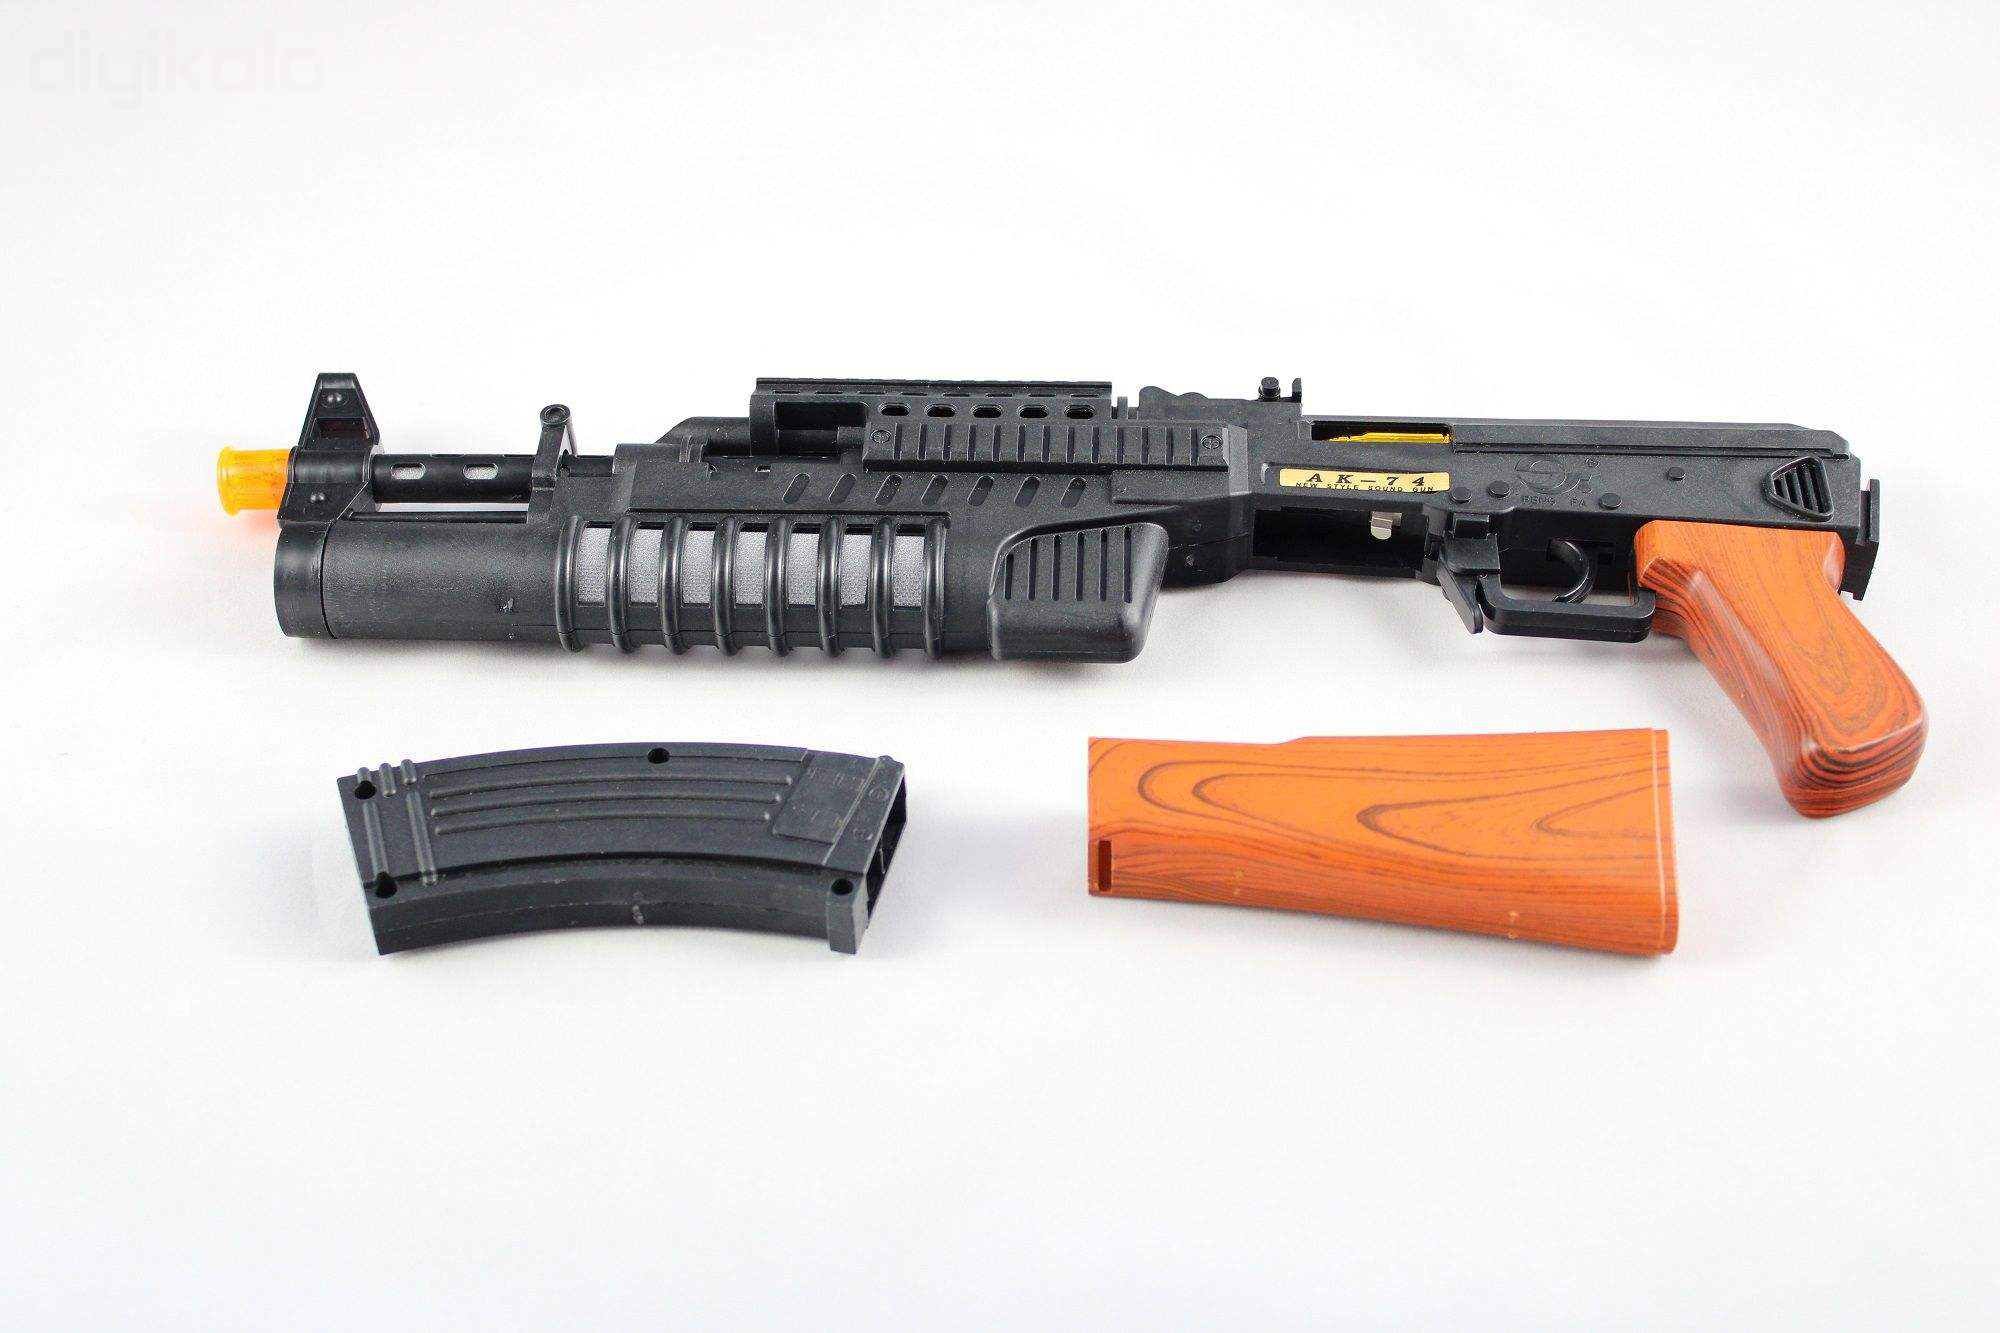 تفنگ بازی مدل AK 6001680